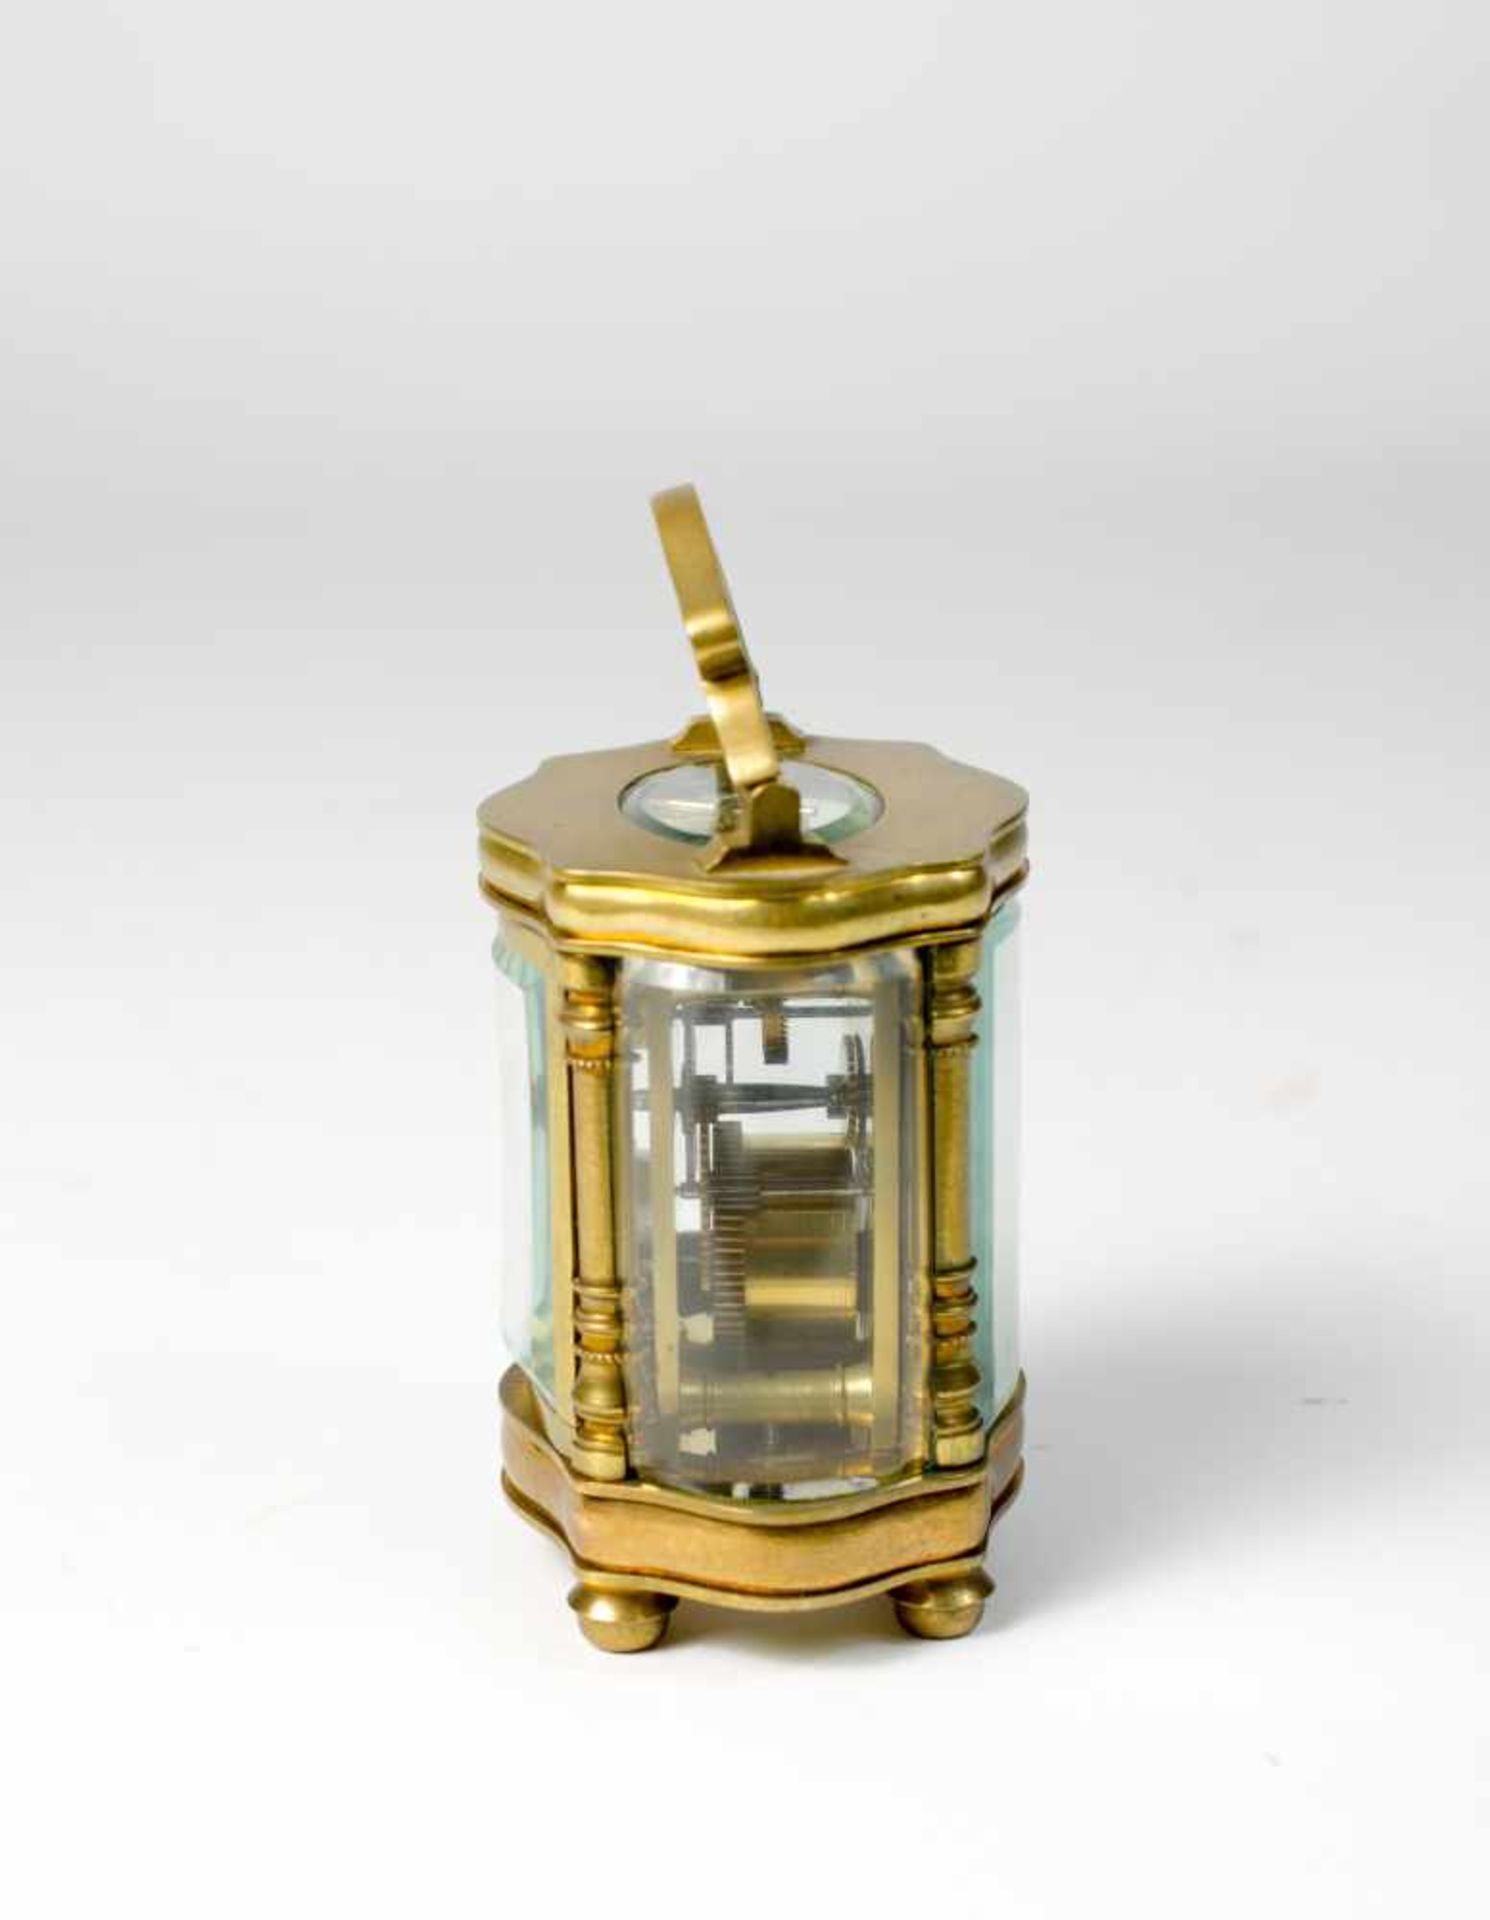 Ovale Reiseuhr Mitte 19. Jh., Messing, 5-seitig verglast, Höhe 10,6 cm, Schweizer Ankergang, läuft - Image 3 of 3